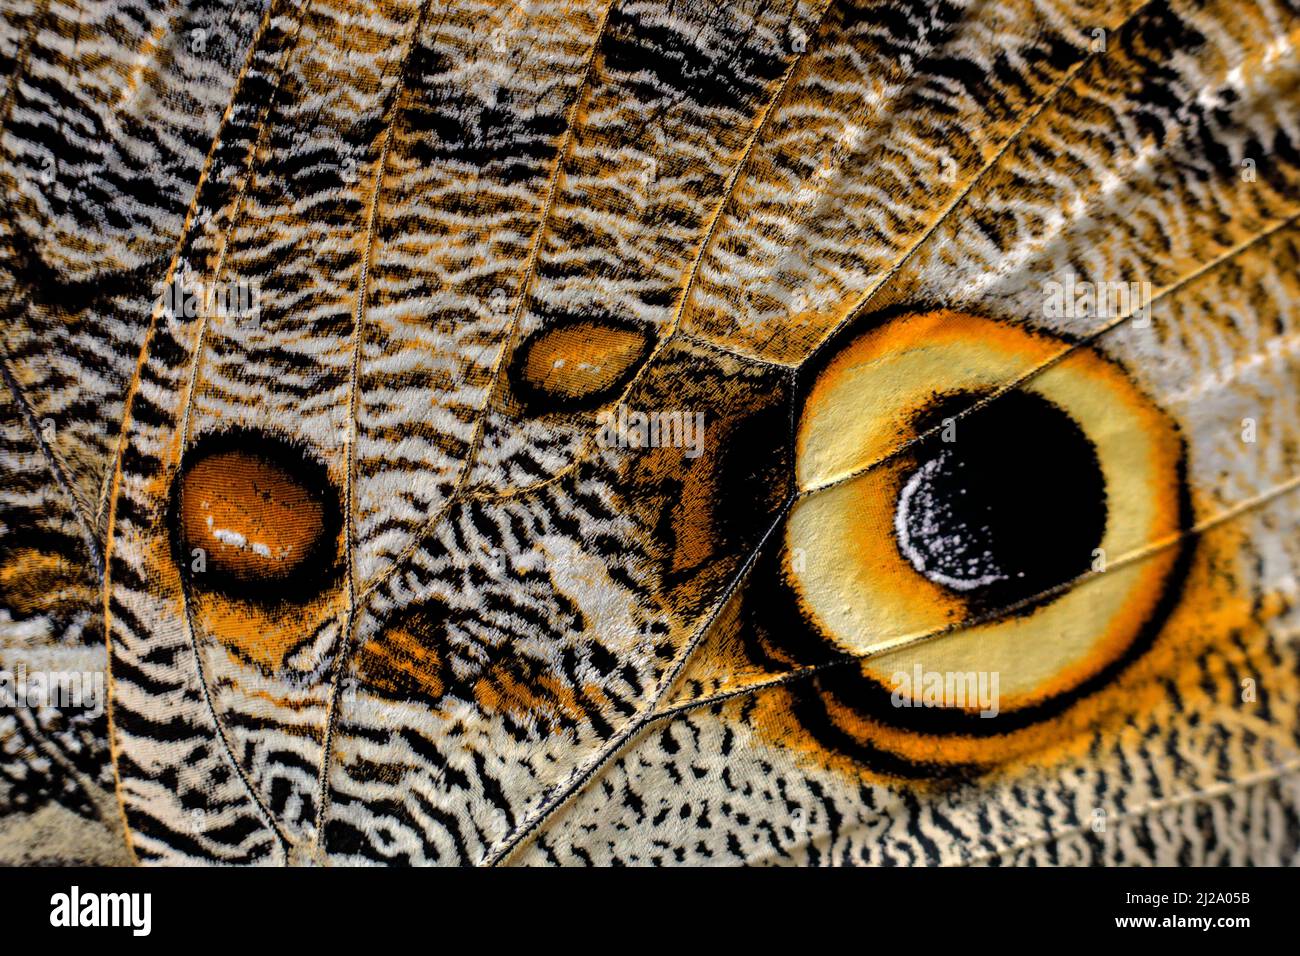 Makrodetails. Nahaufnahme des Schmetterlingsflügels. Blauer Morpho, Morpho-Peleides, in Habitat, Costa Rica. Insektenflügel in Augenoptik. Kunstansicht auf die Natur, wildl Stockfoto